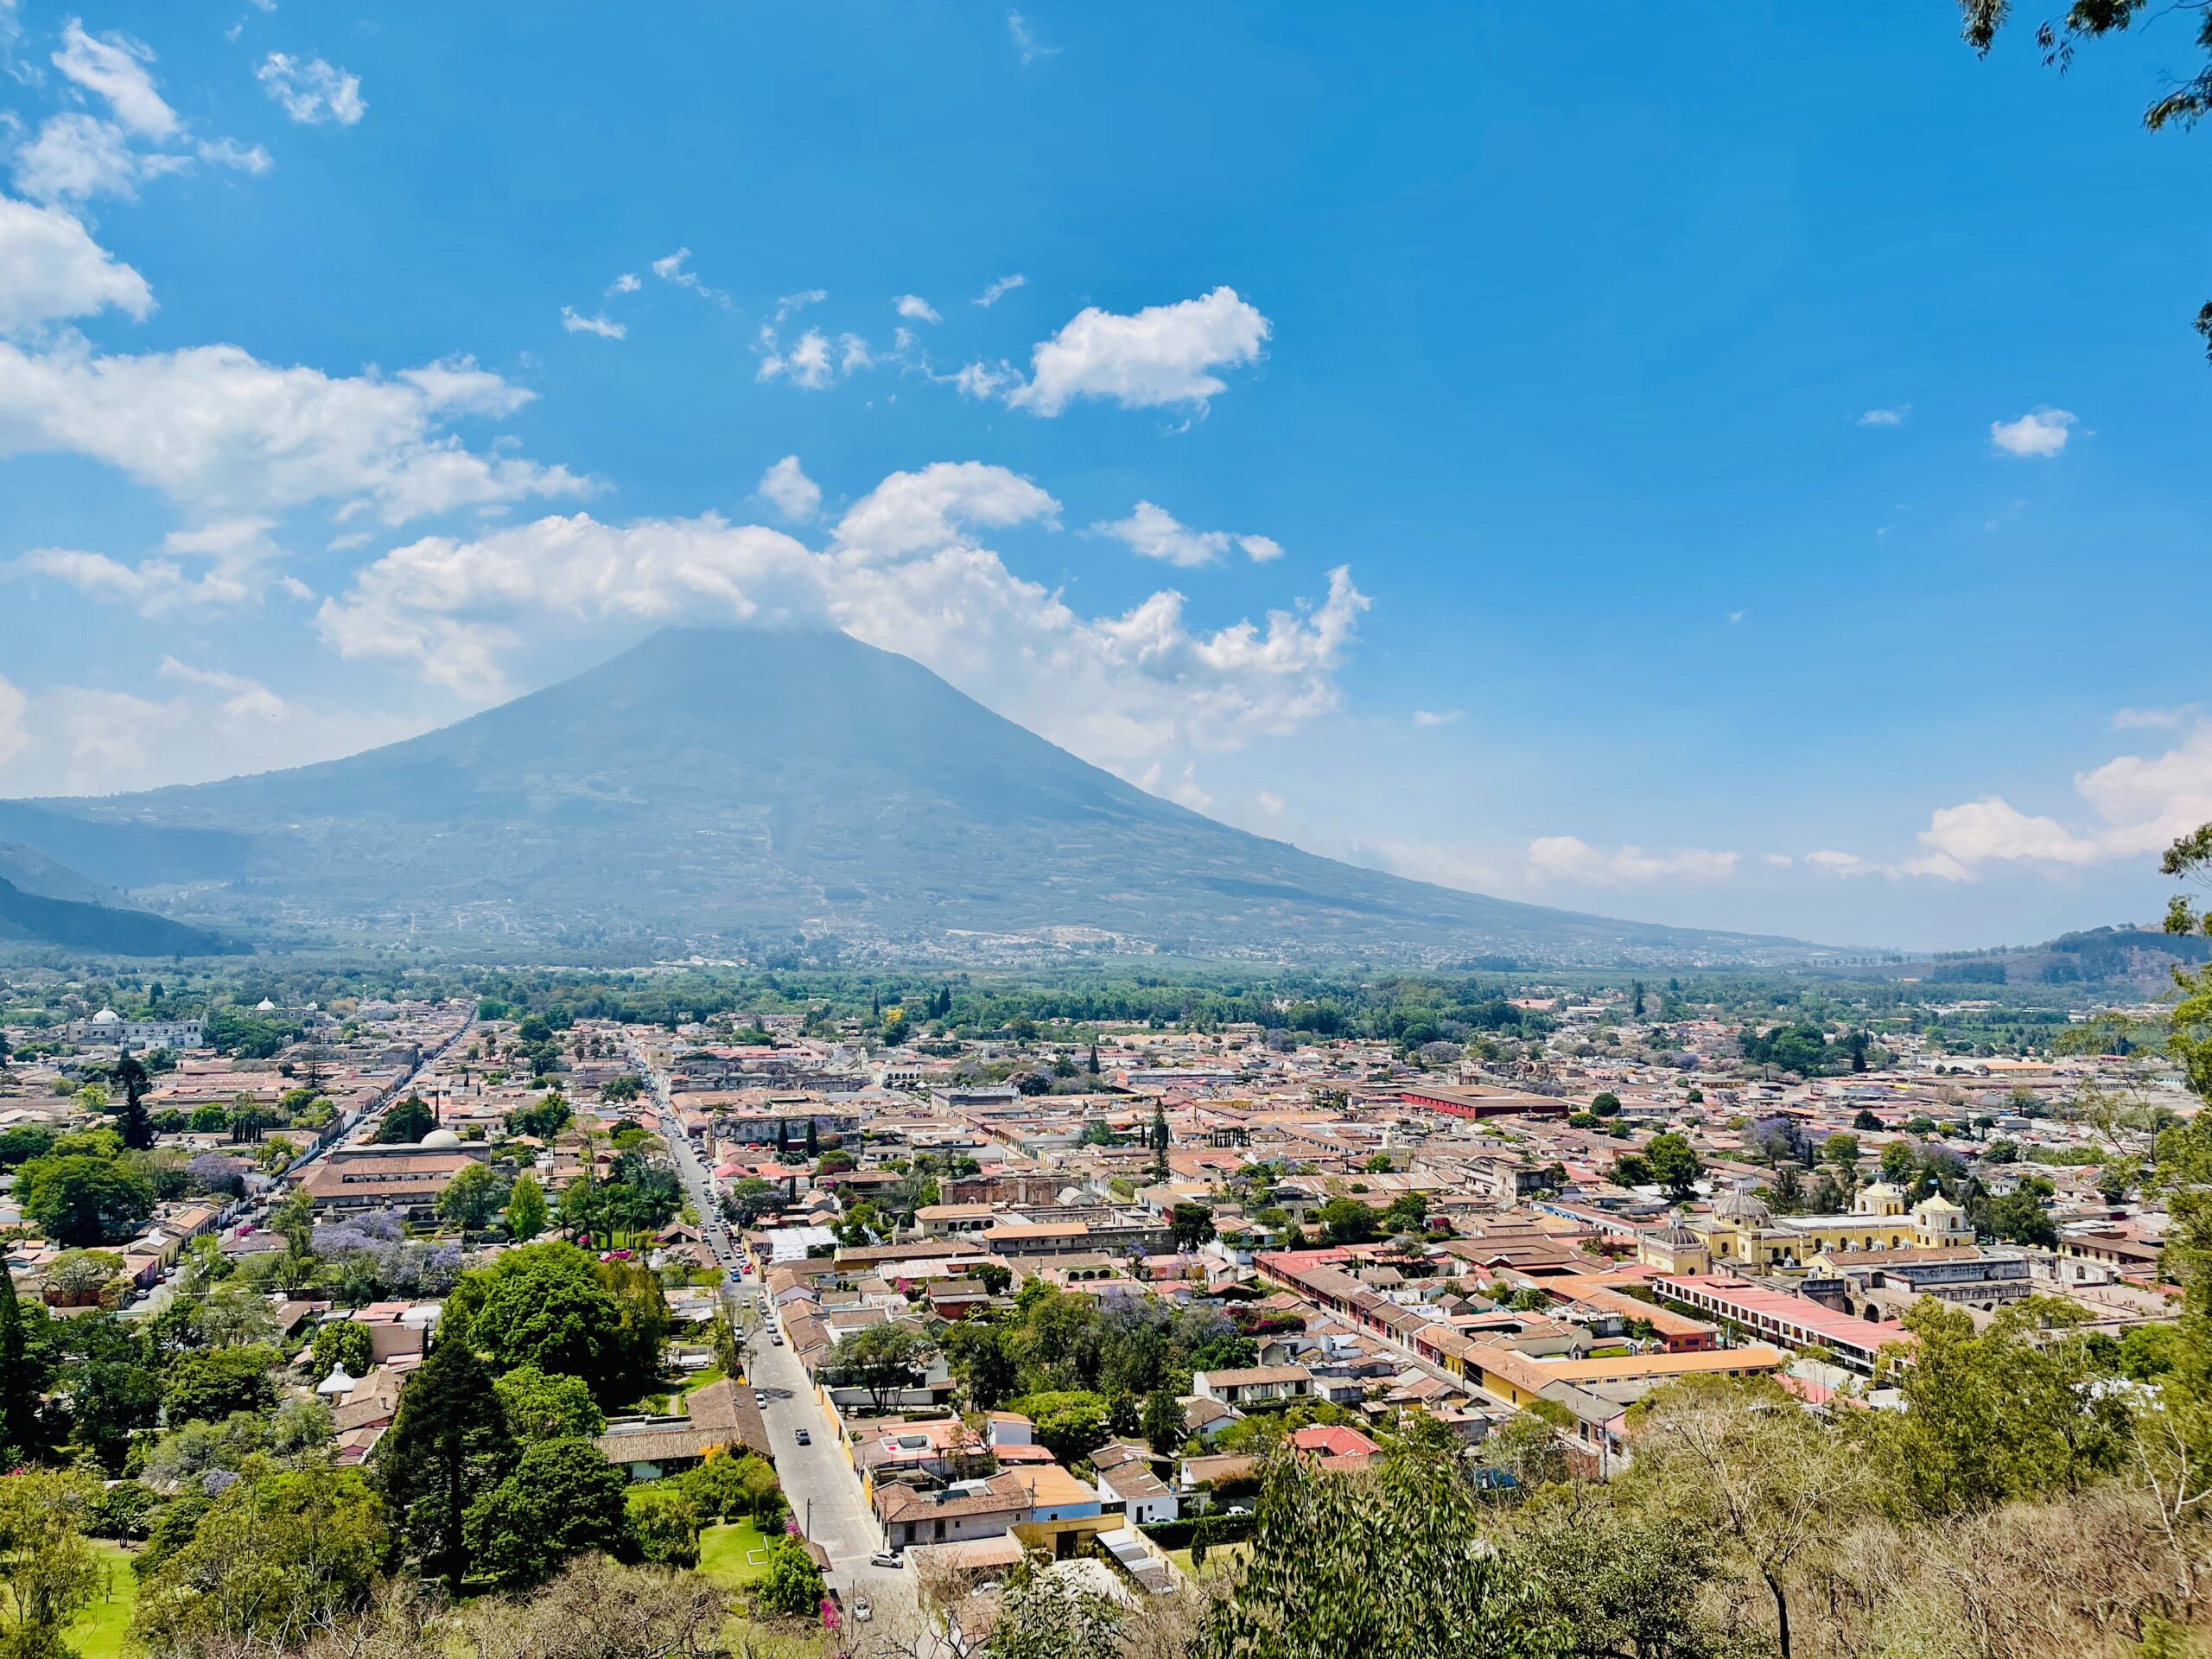 Antigua Guatemala's view from El Cerro de la Cruz.